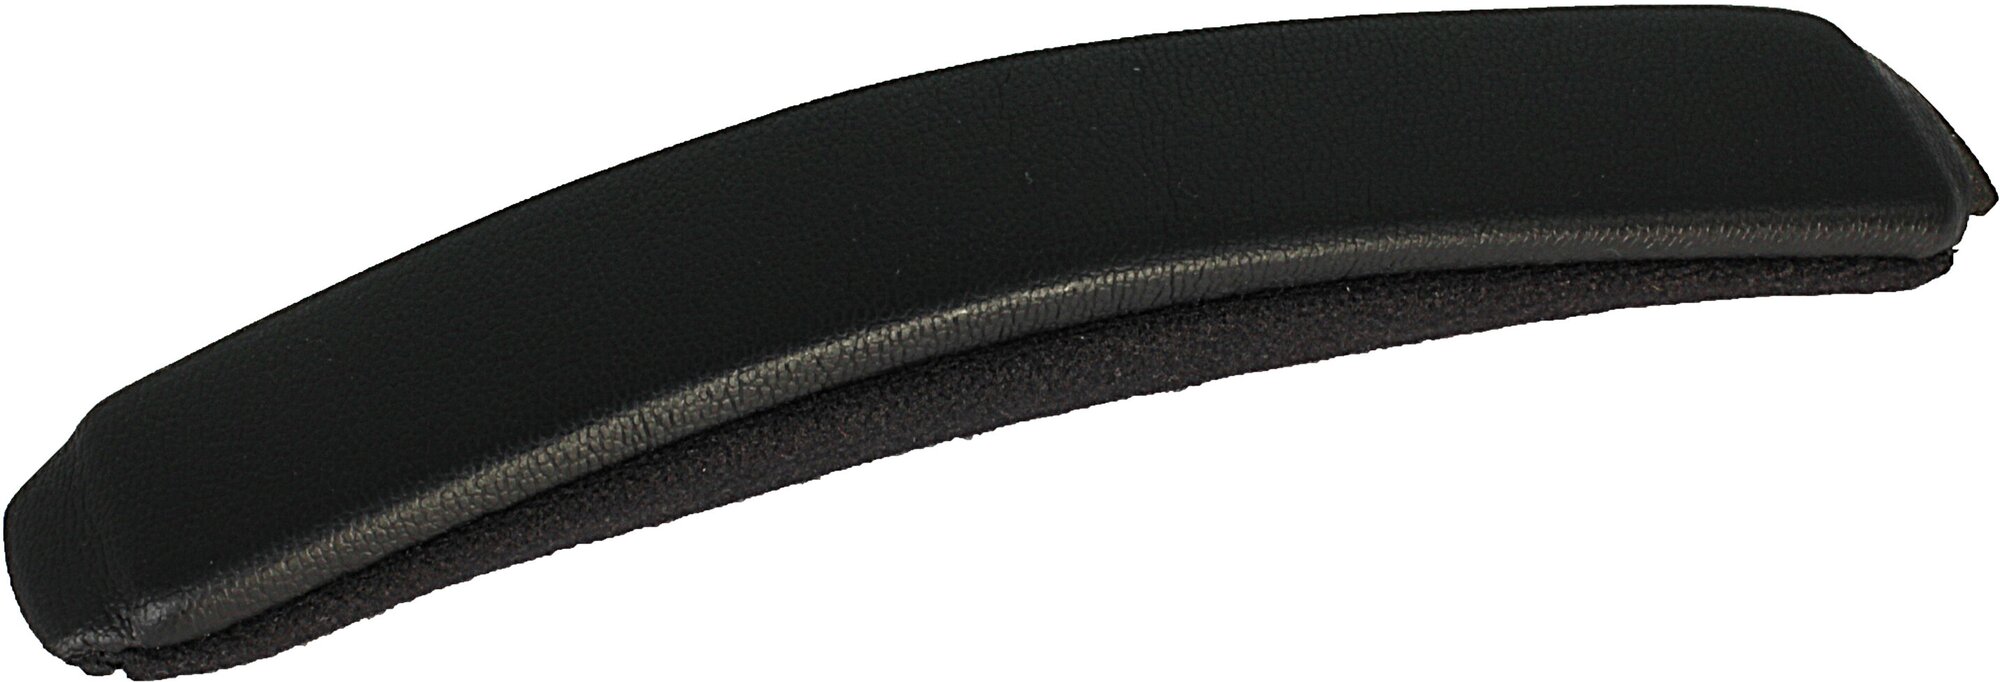 Обшивка оголовья для наушников Bose QC35 / QC35-2 черная